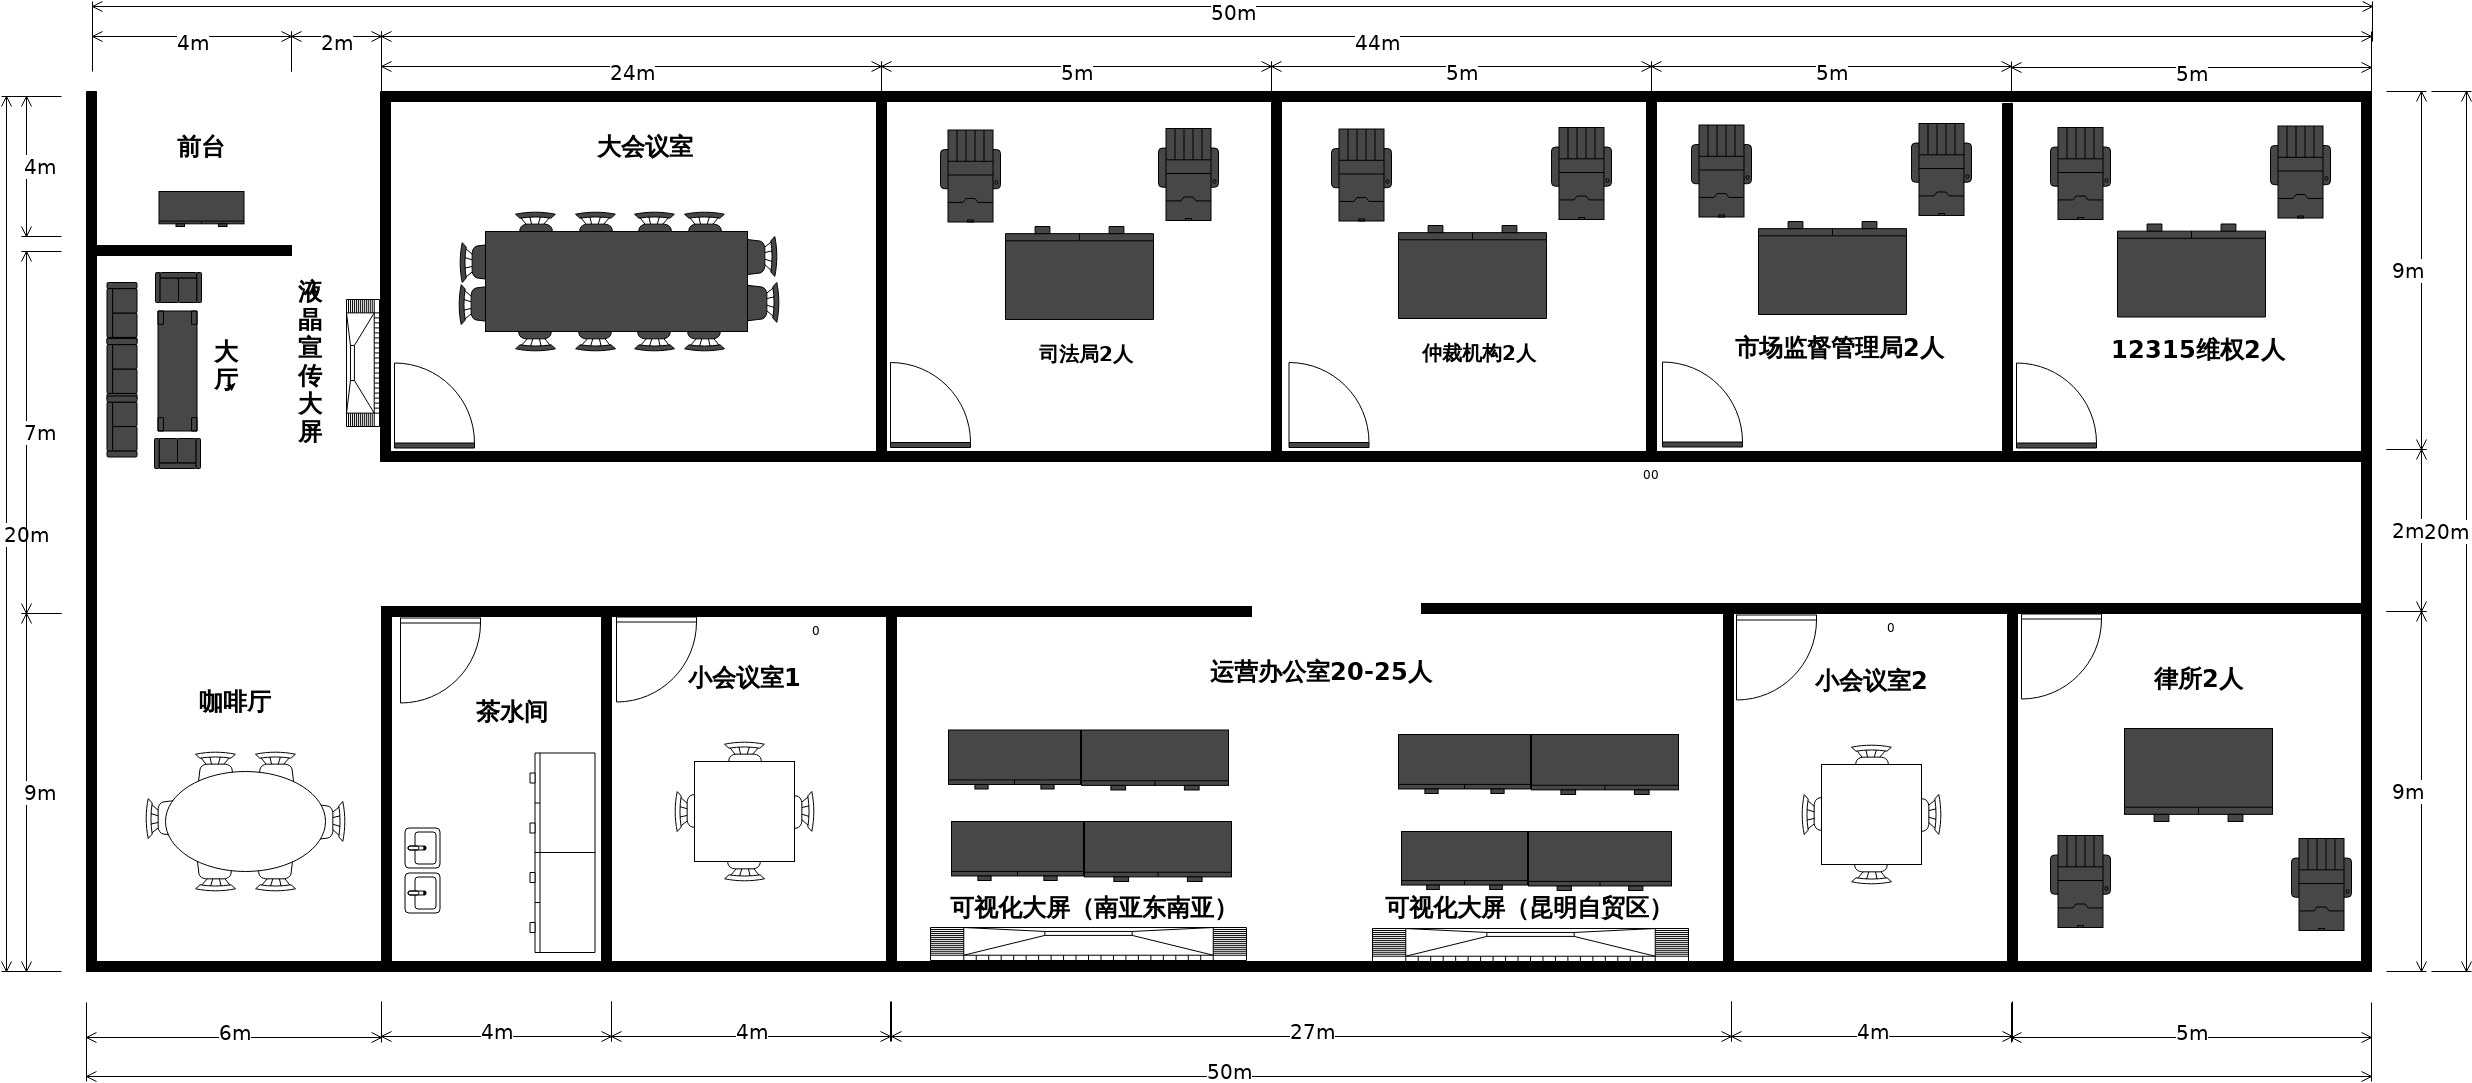 在线绘图工具,ER模型设计-别墅平面图第六版,在线楼层平面图制作,楼层结构平面图,在线楼层设计图,住宅楼层平面图,怎么画楼层平面图,楼层图表示 ...